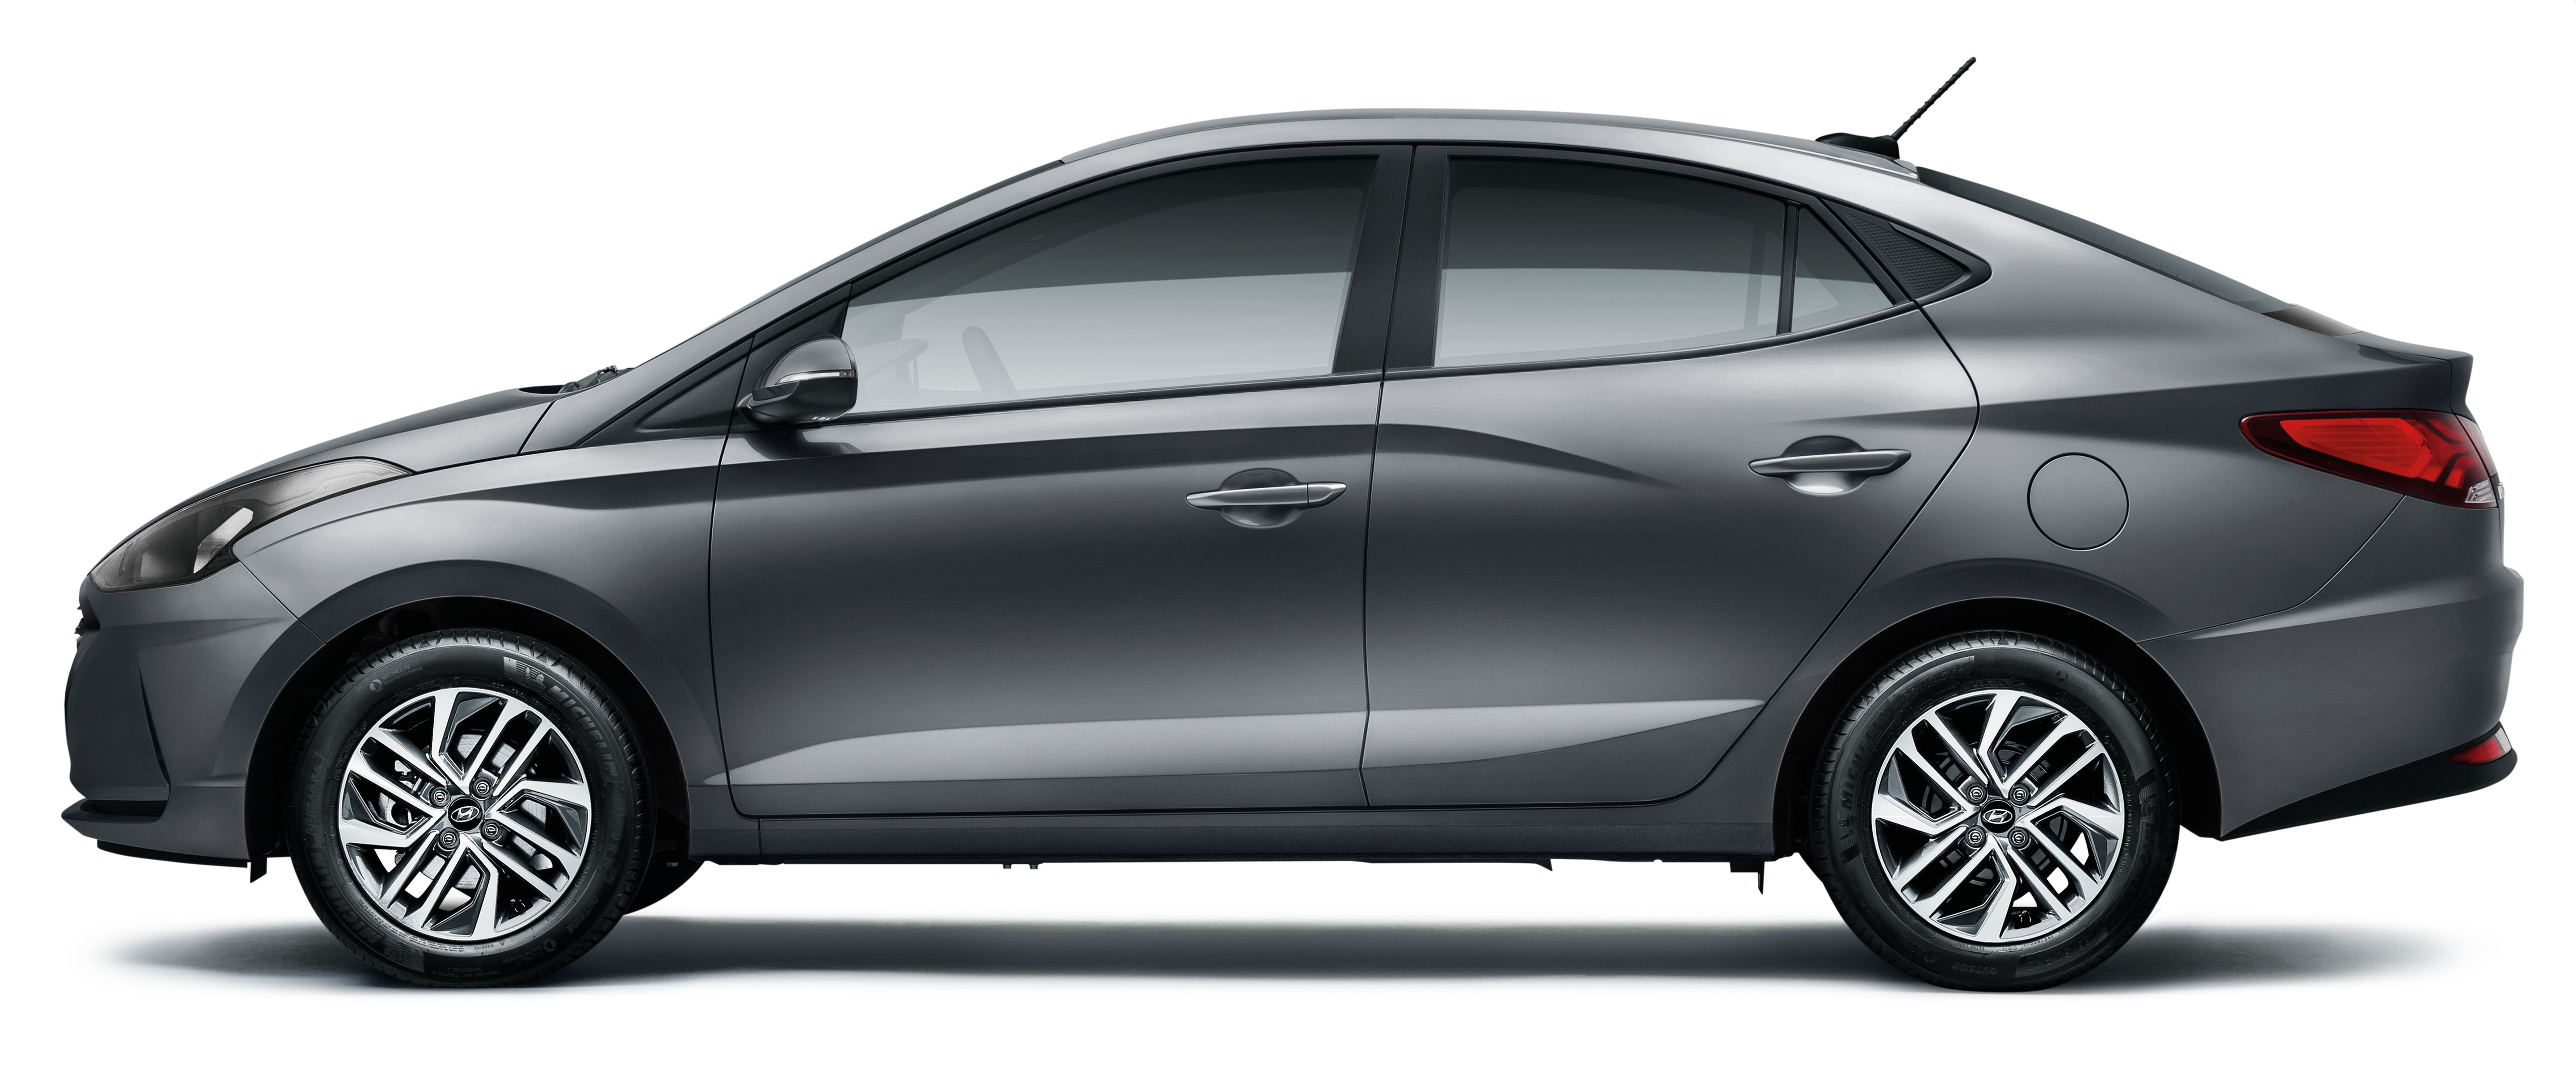 Com 1.0 turbo em baixa, Hyundai HB20 1.6 ganha conteúdo na